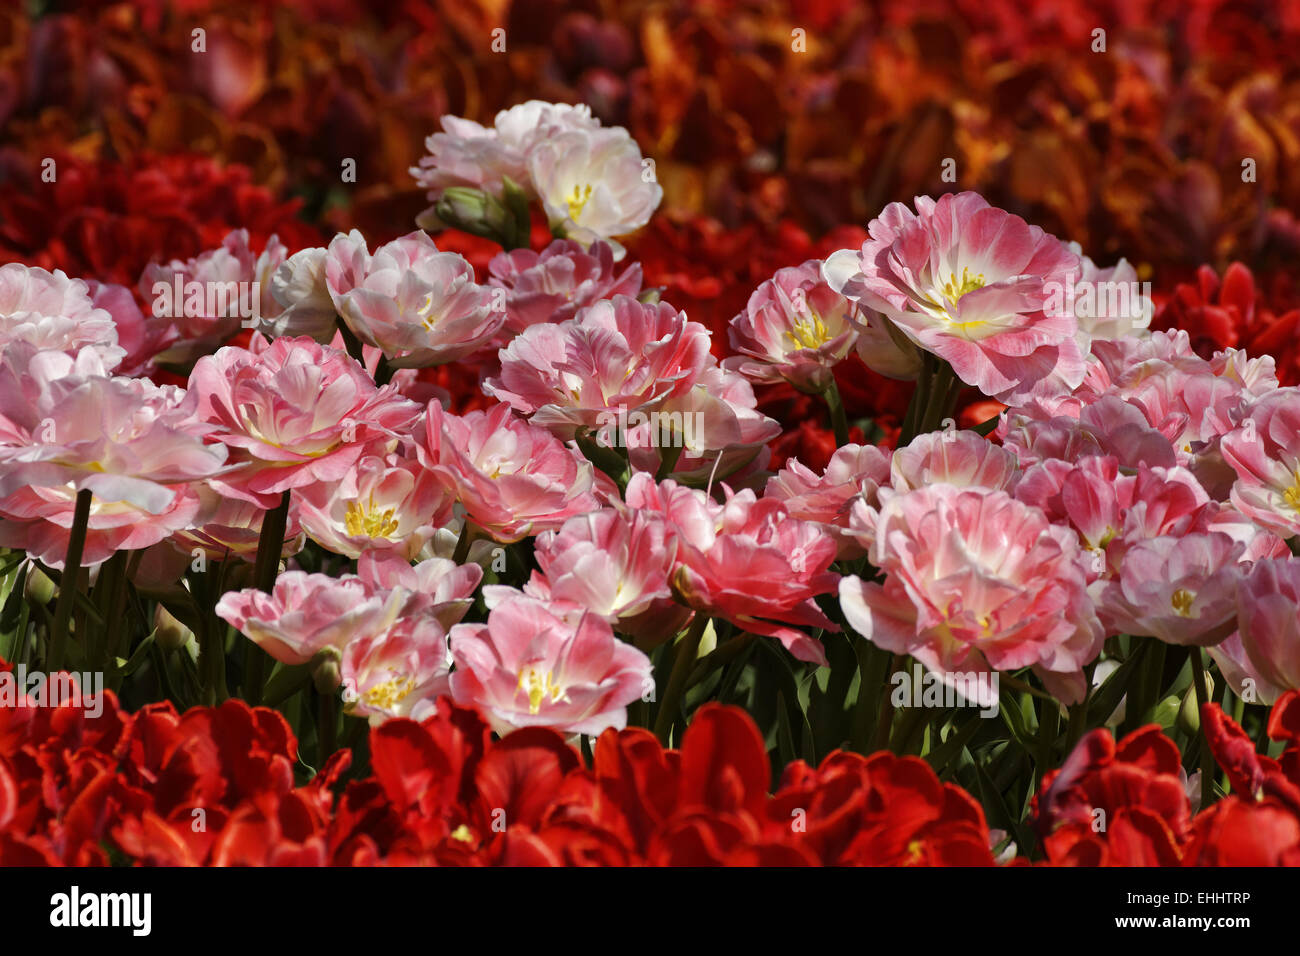 Tulip Angelique, Double late tulip Stock Photo